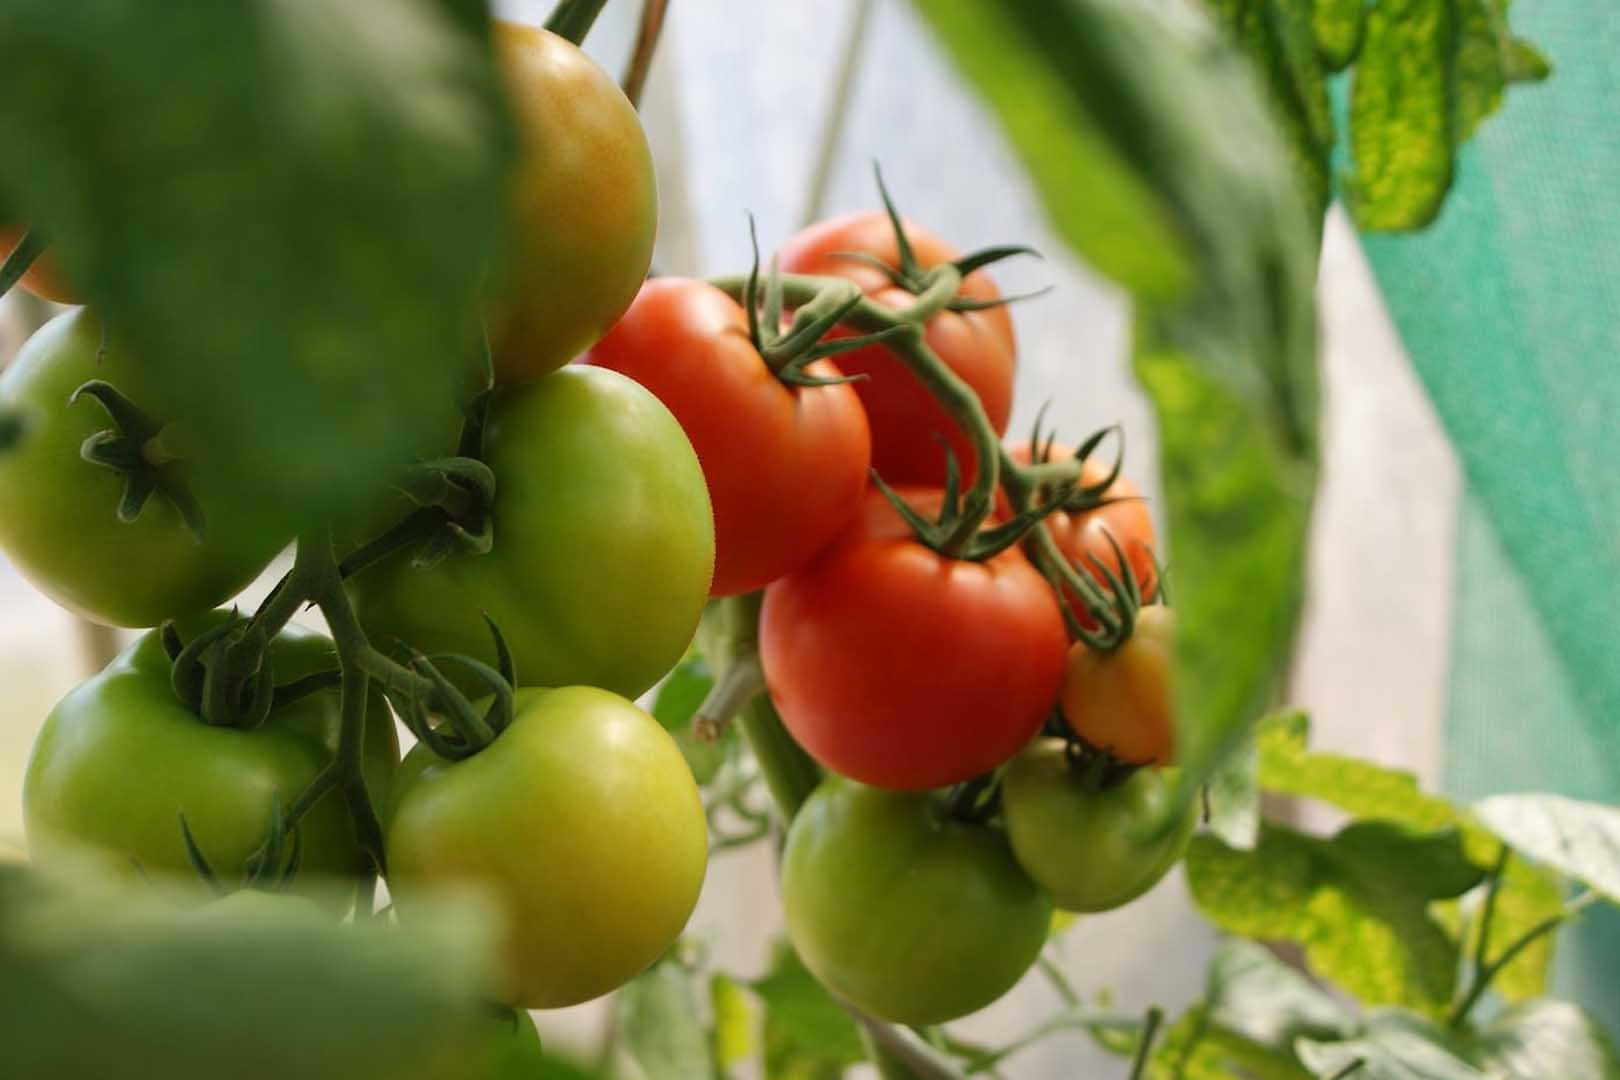 Yuk, Kenali Manfaat Serta Kandungan Yang Ada Pada Buah Tomat